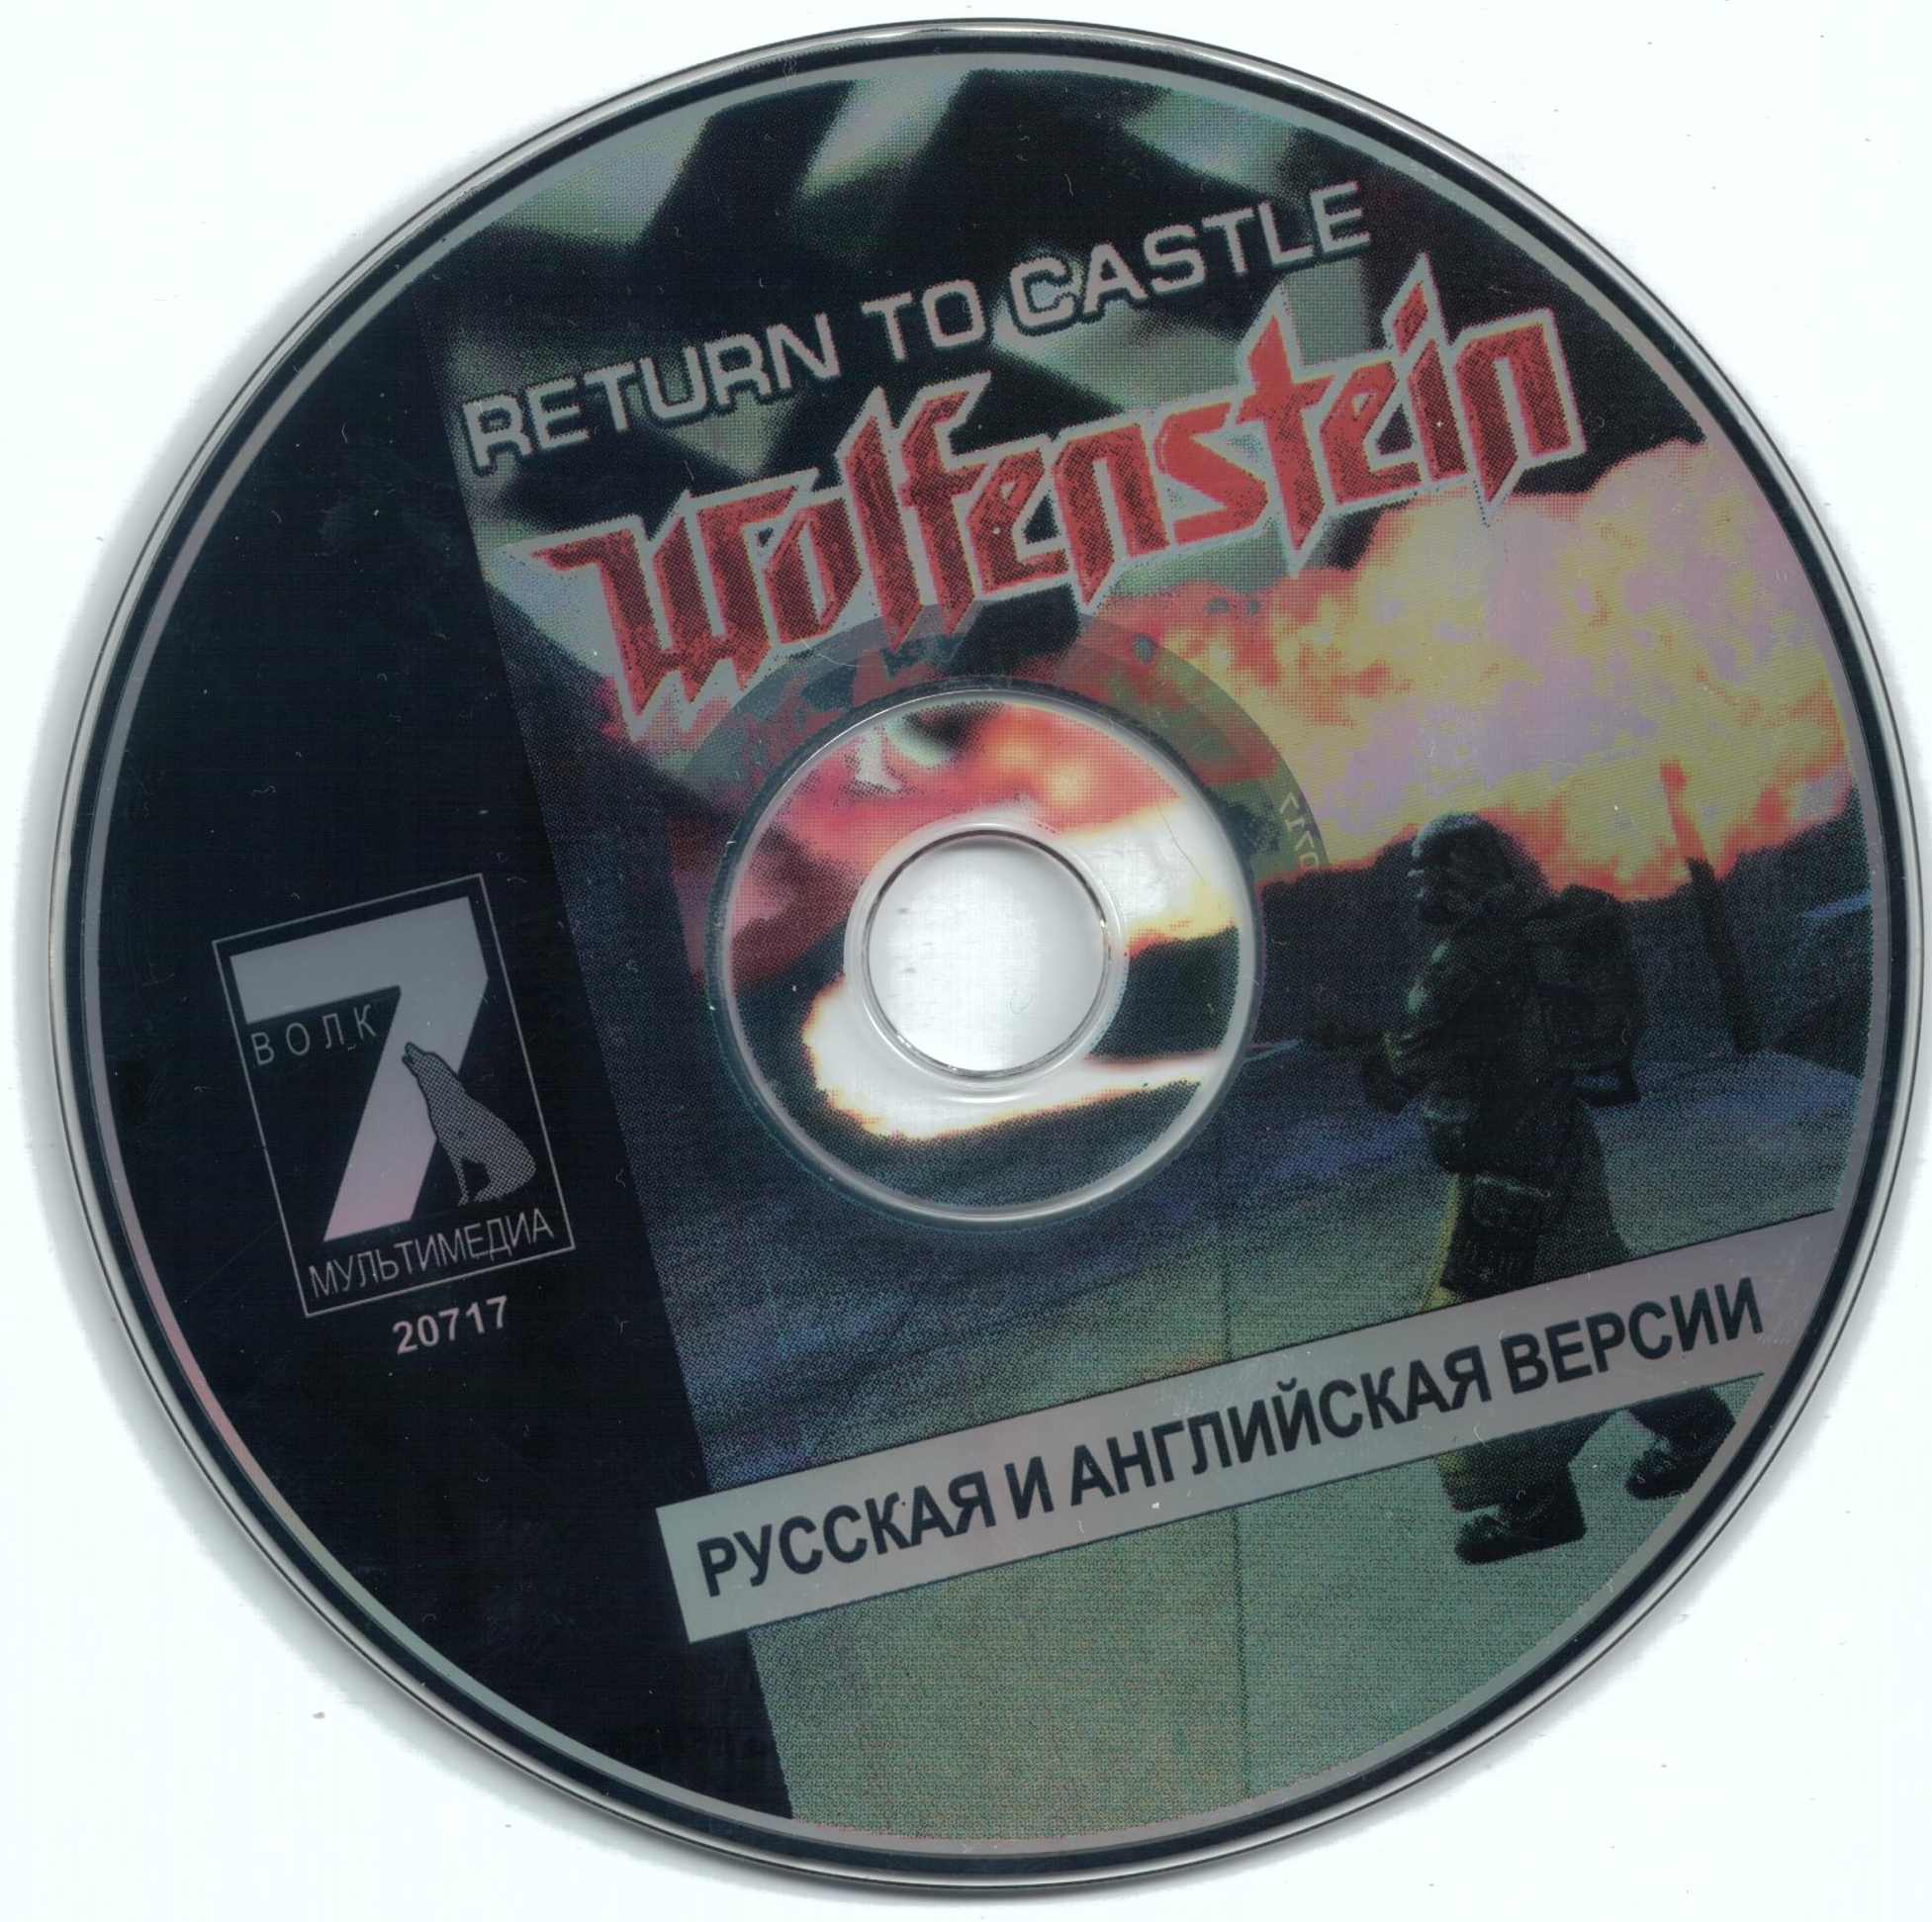 Return to castle wolfenstein 2 download torrent tpb version